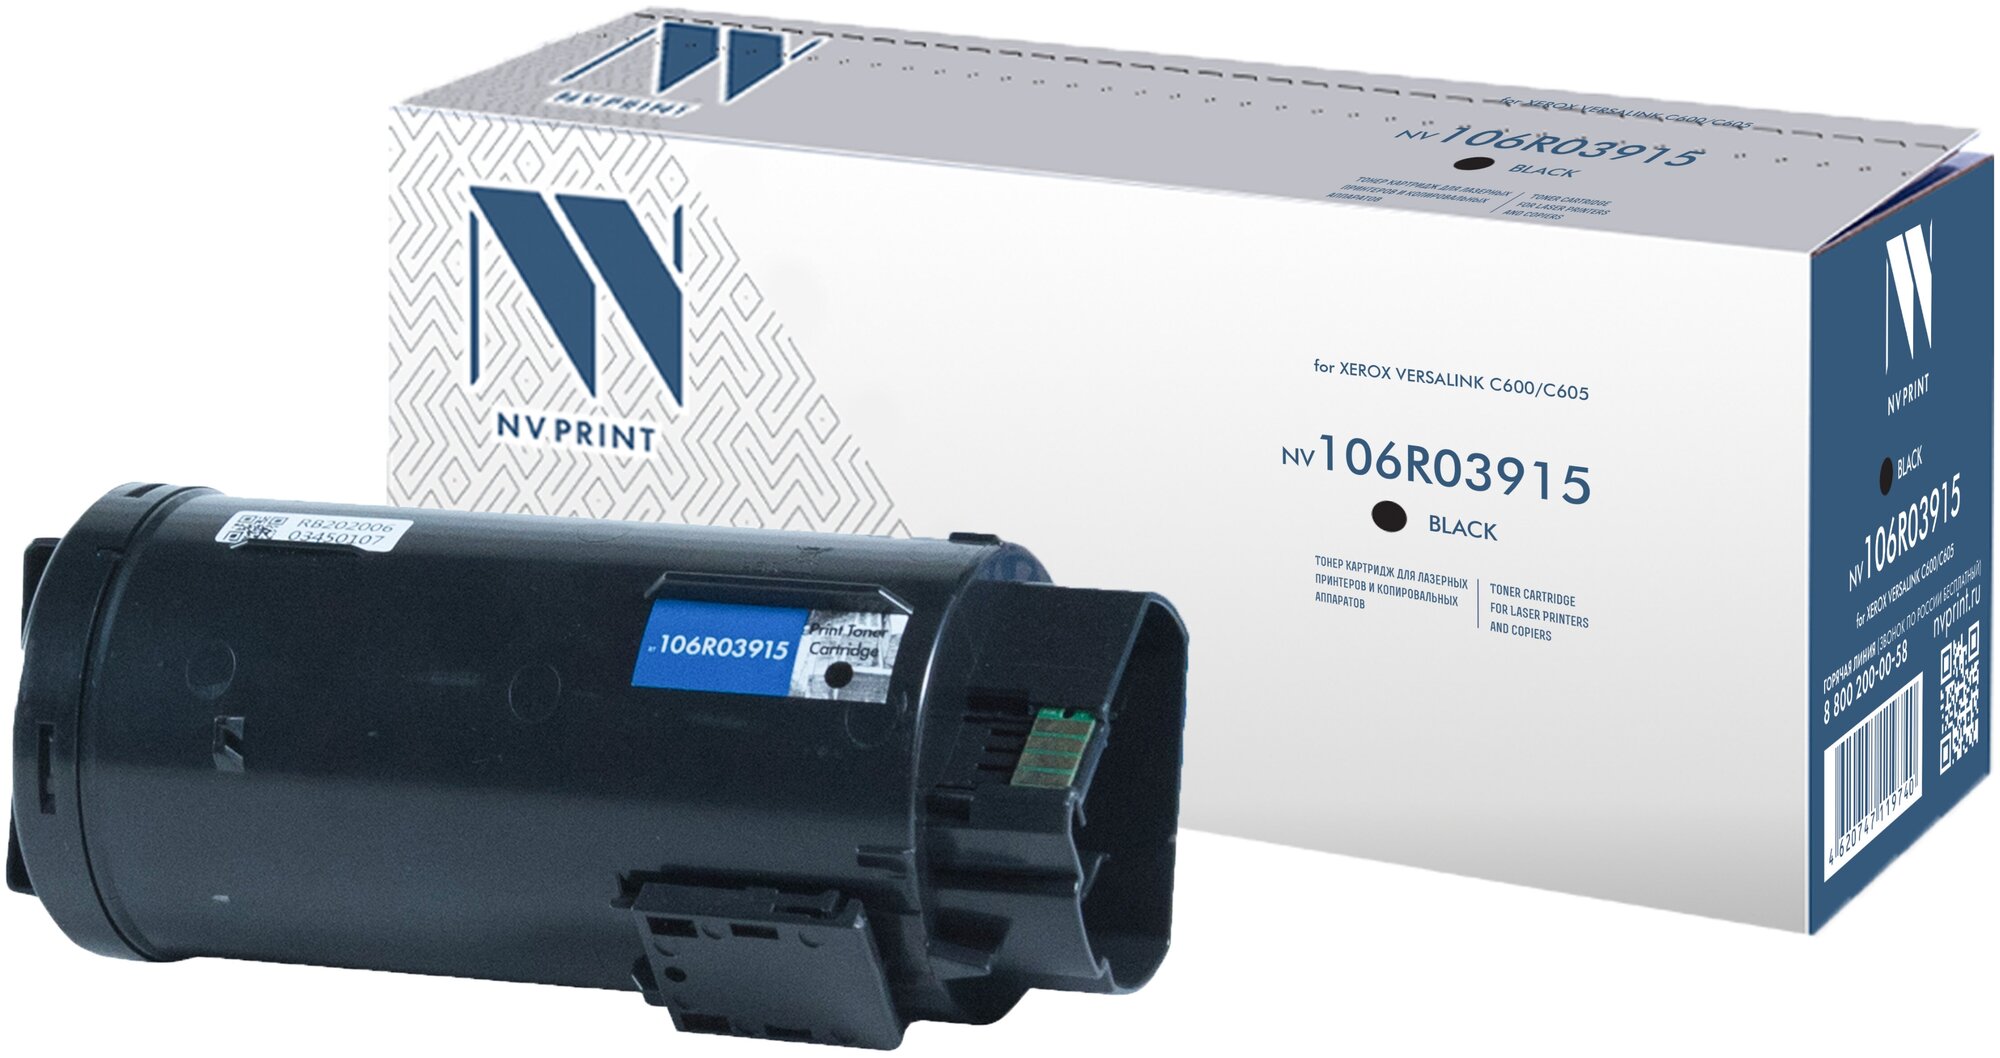 Лазерный картридж NV Print NV-106R03915BK для для Xerox VersaLink C600, C605 (совместимый, чёрный, 12200 стр.)